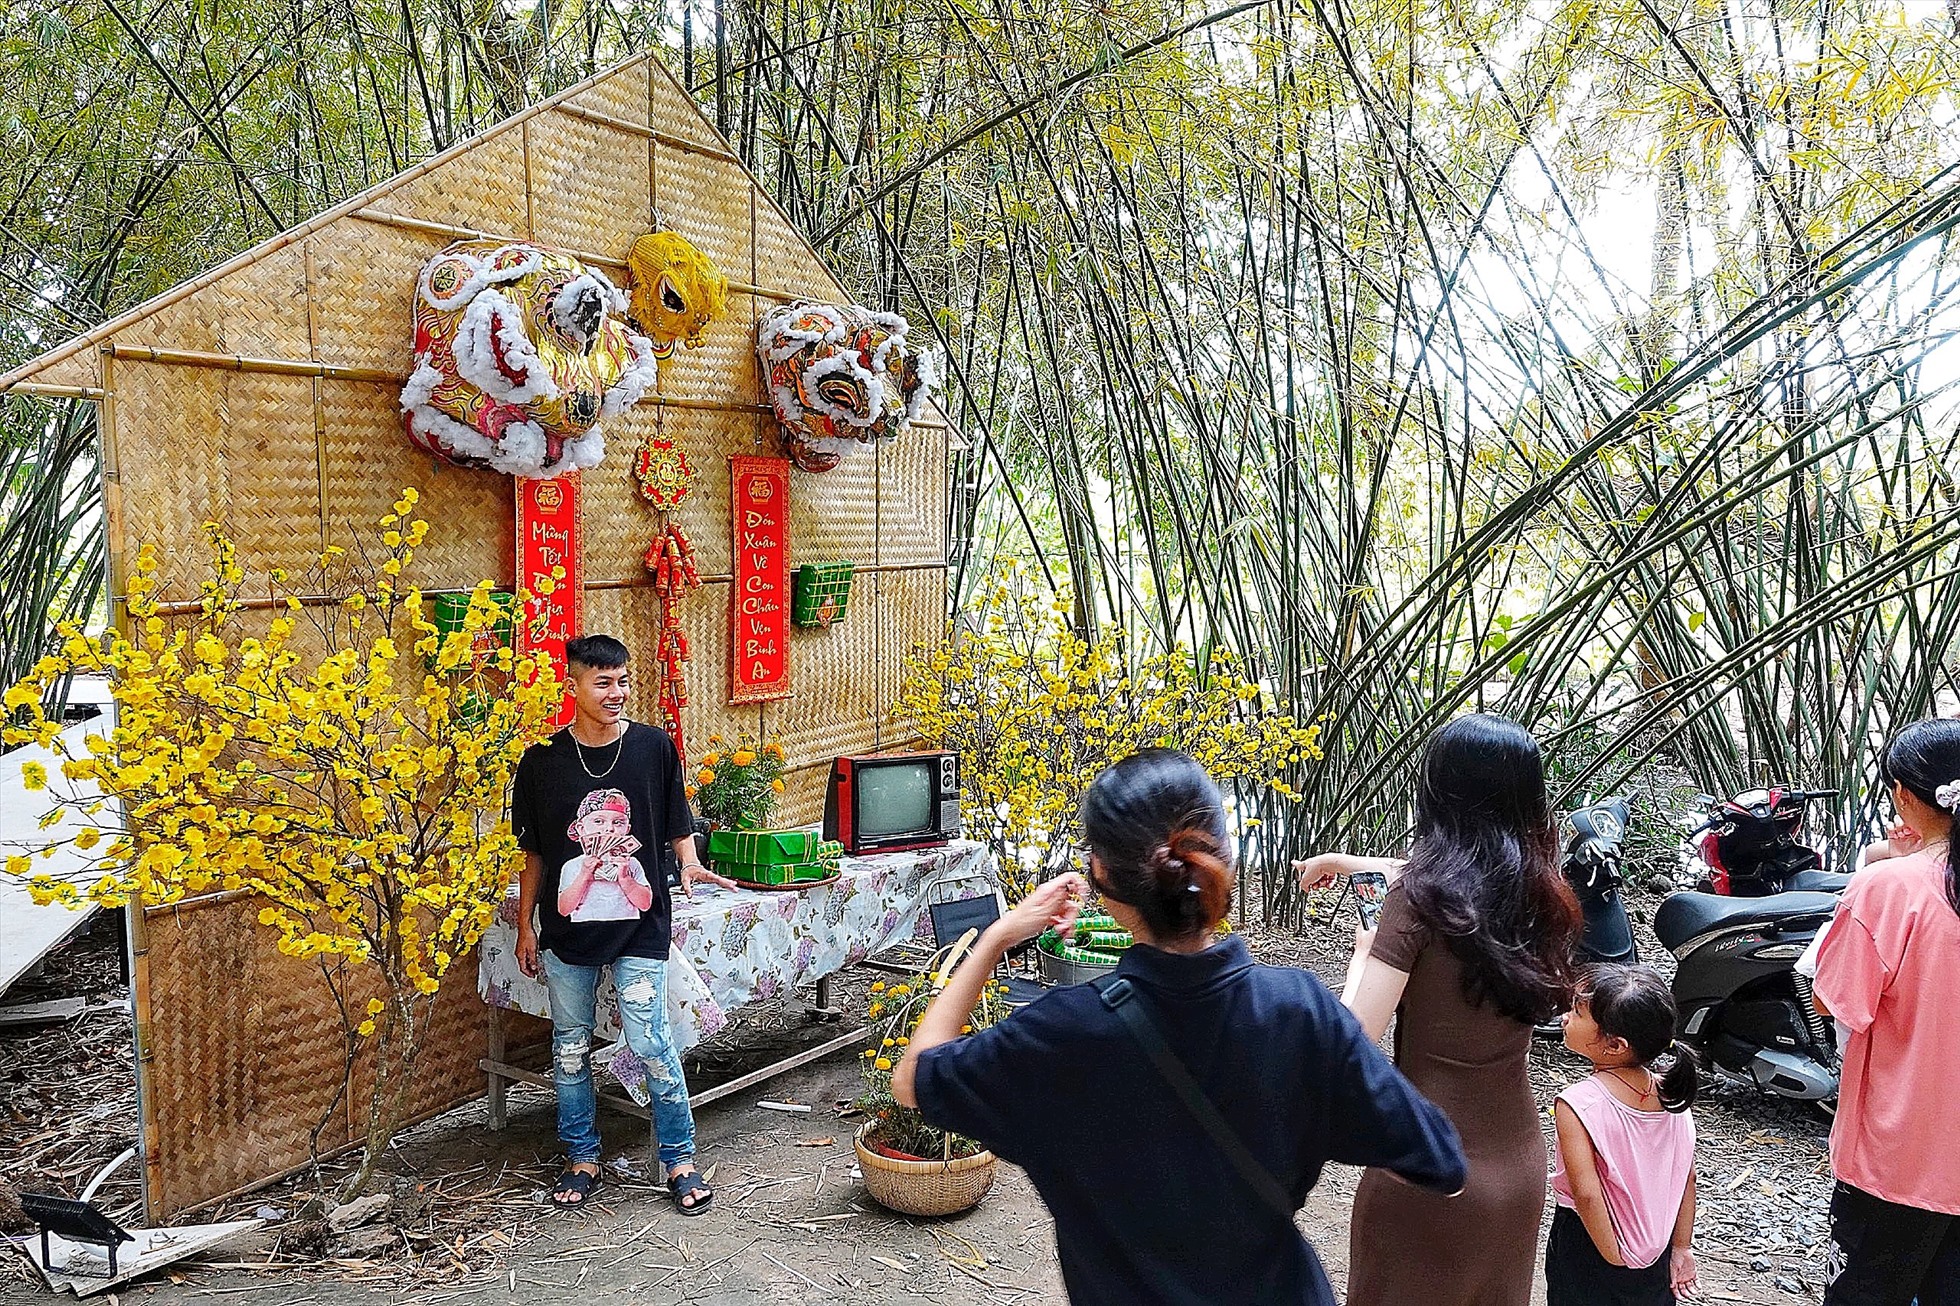 Khu du lịch sinh thái cộng đồng Tư Sang vừa được hoàn thiện và chính thức được đưa vào hoạt động ngày 22.1 (tức mùng 1 Tết).